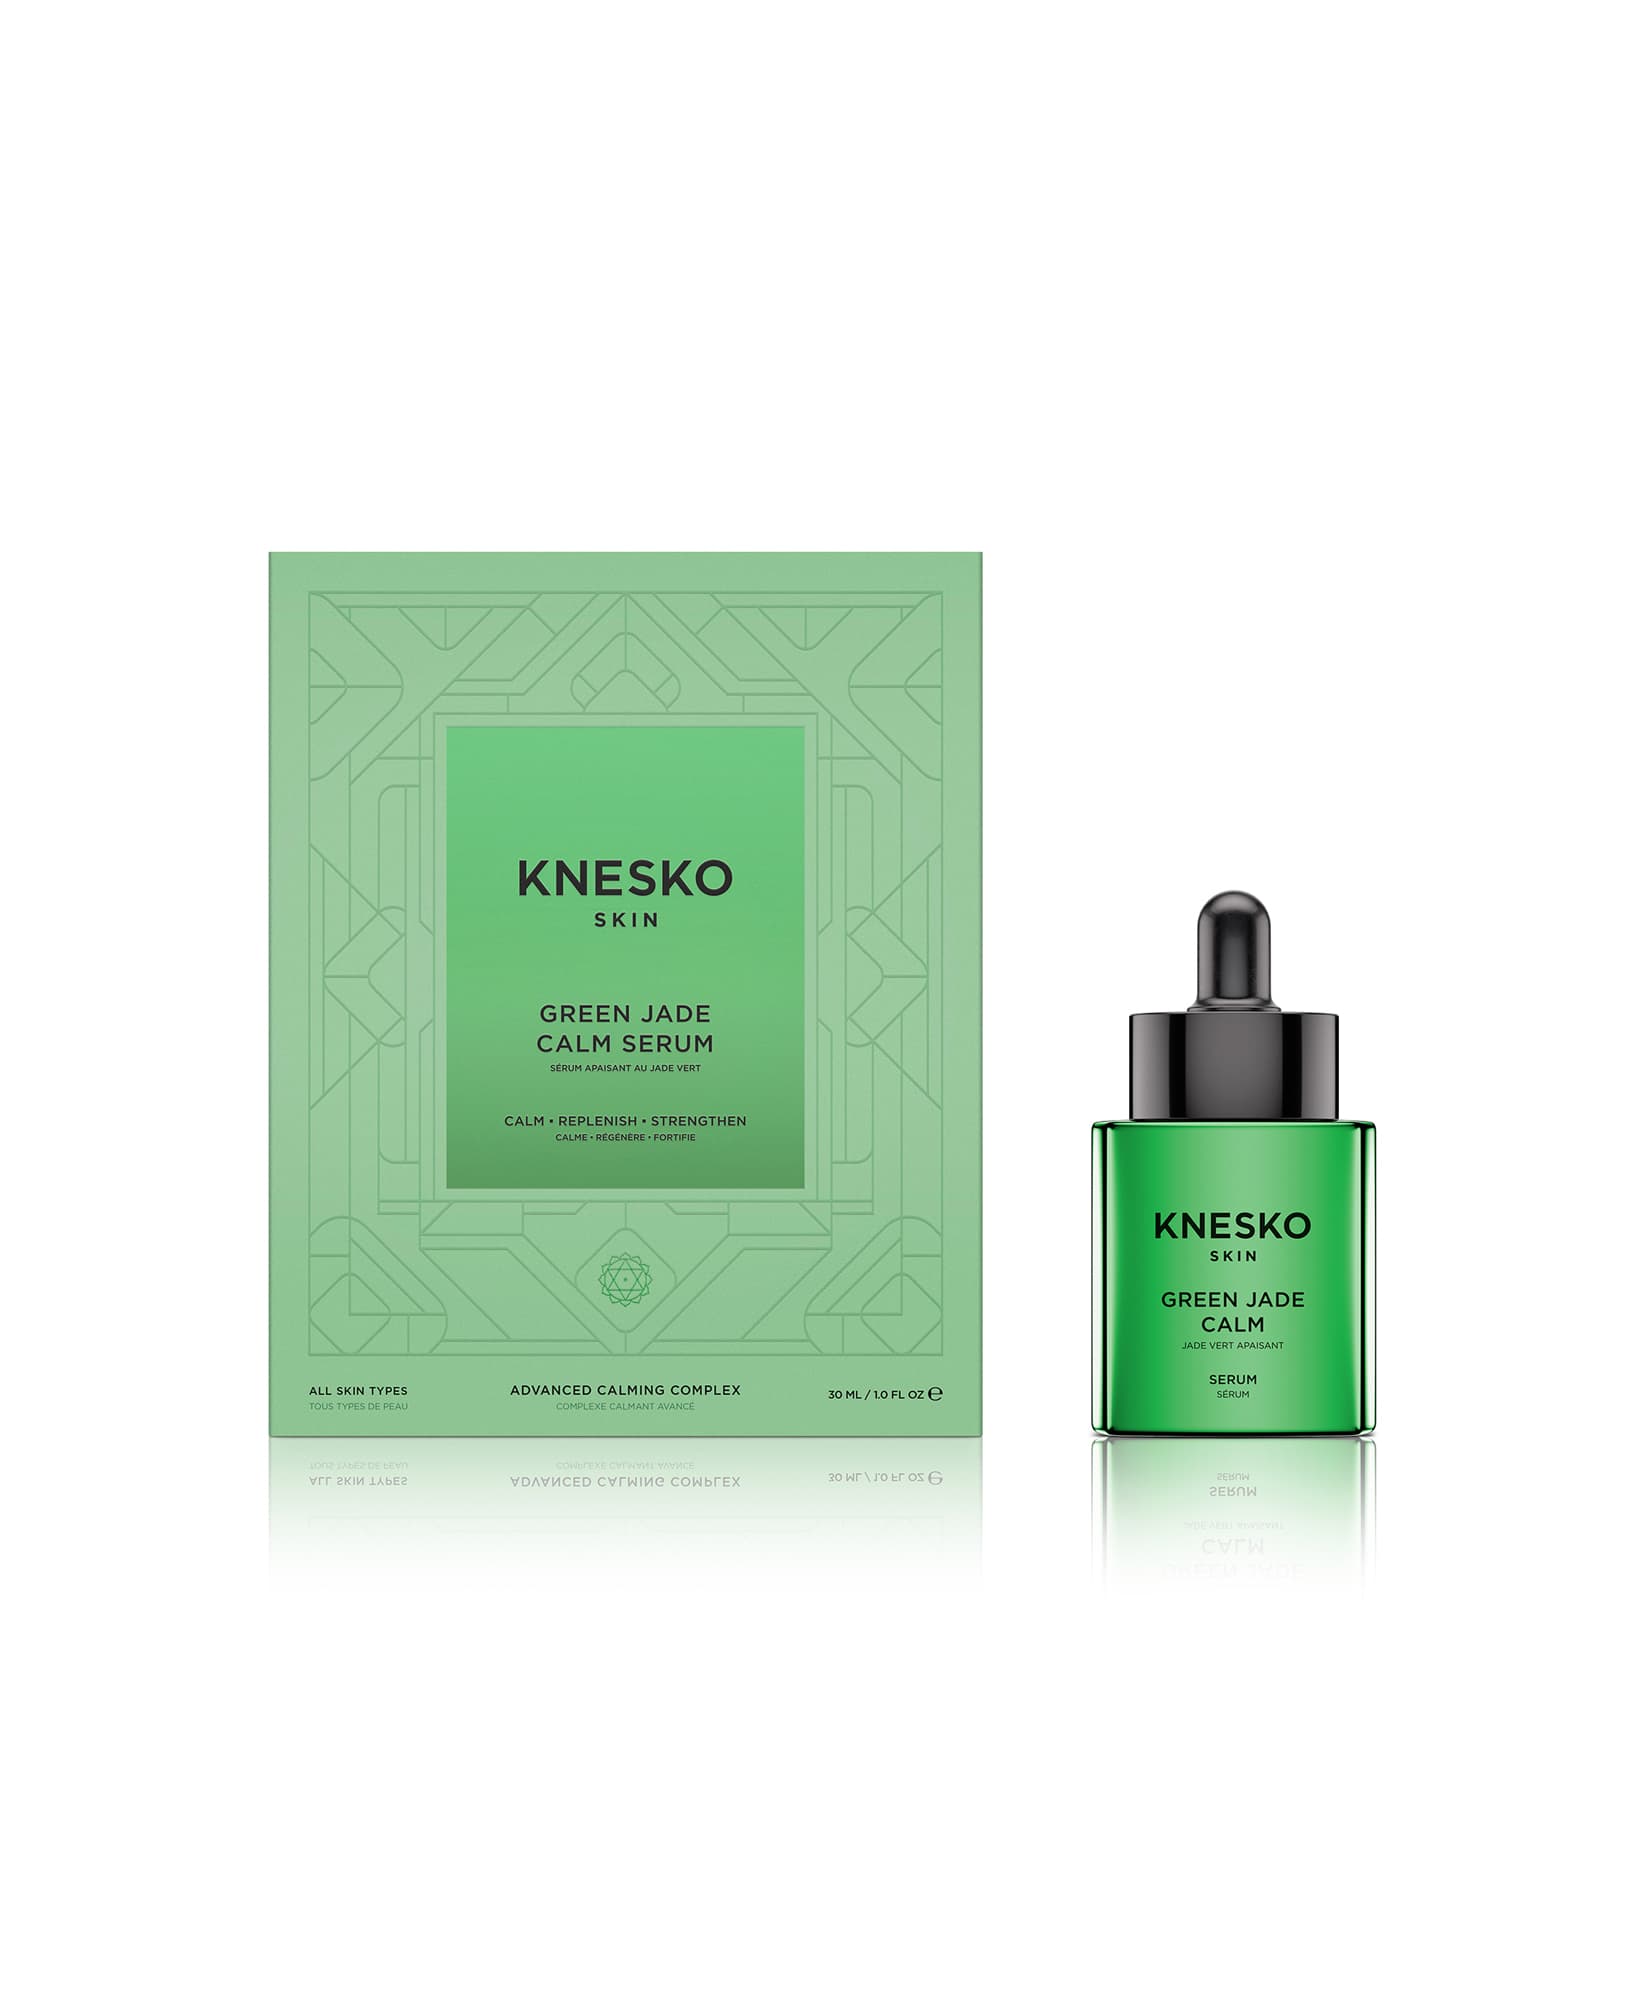 green jade serum outside packaging 